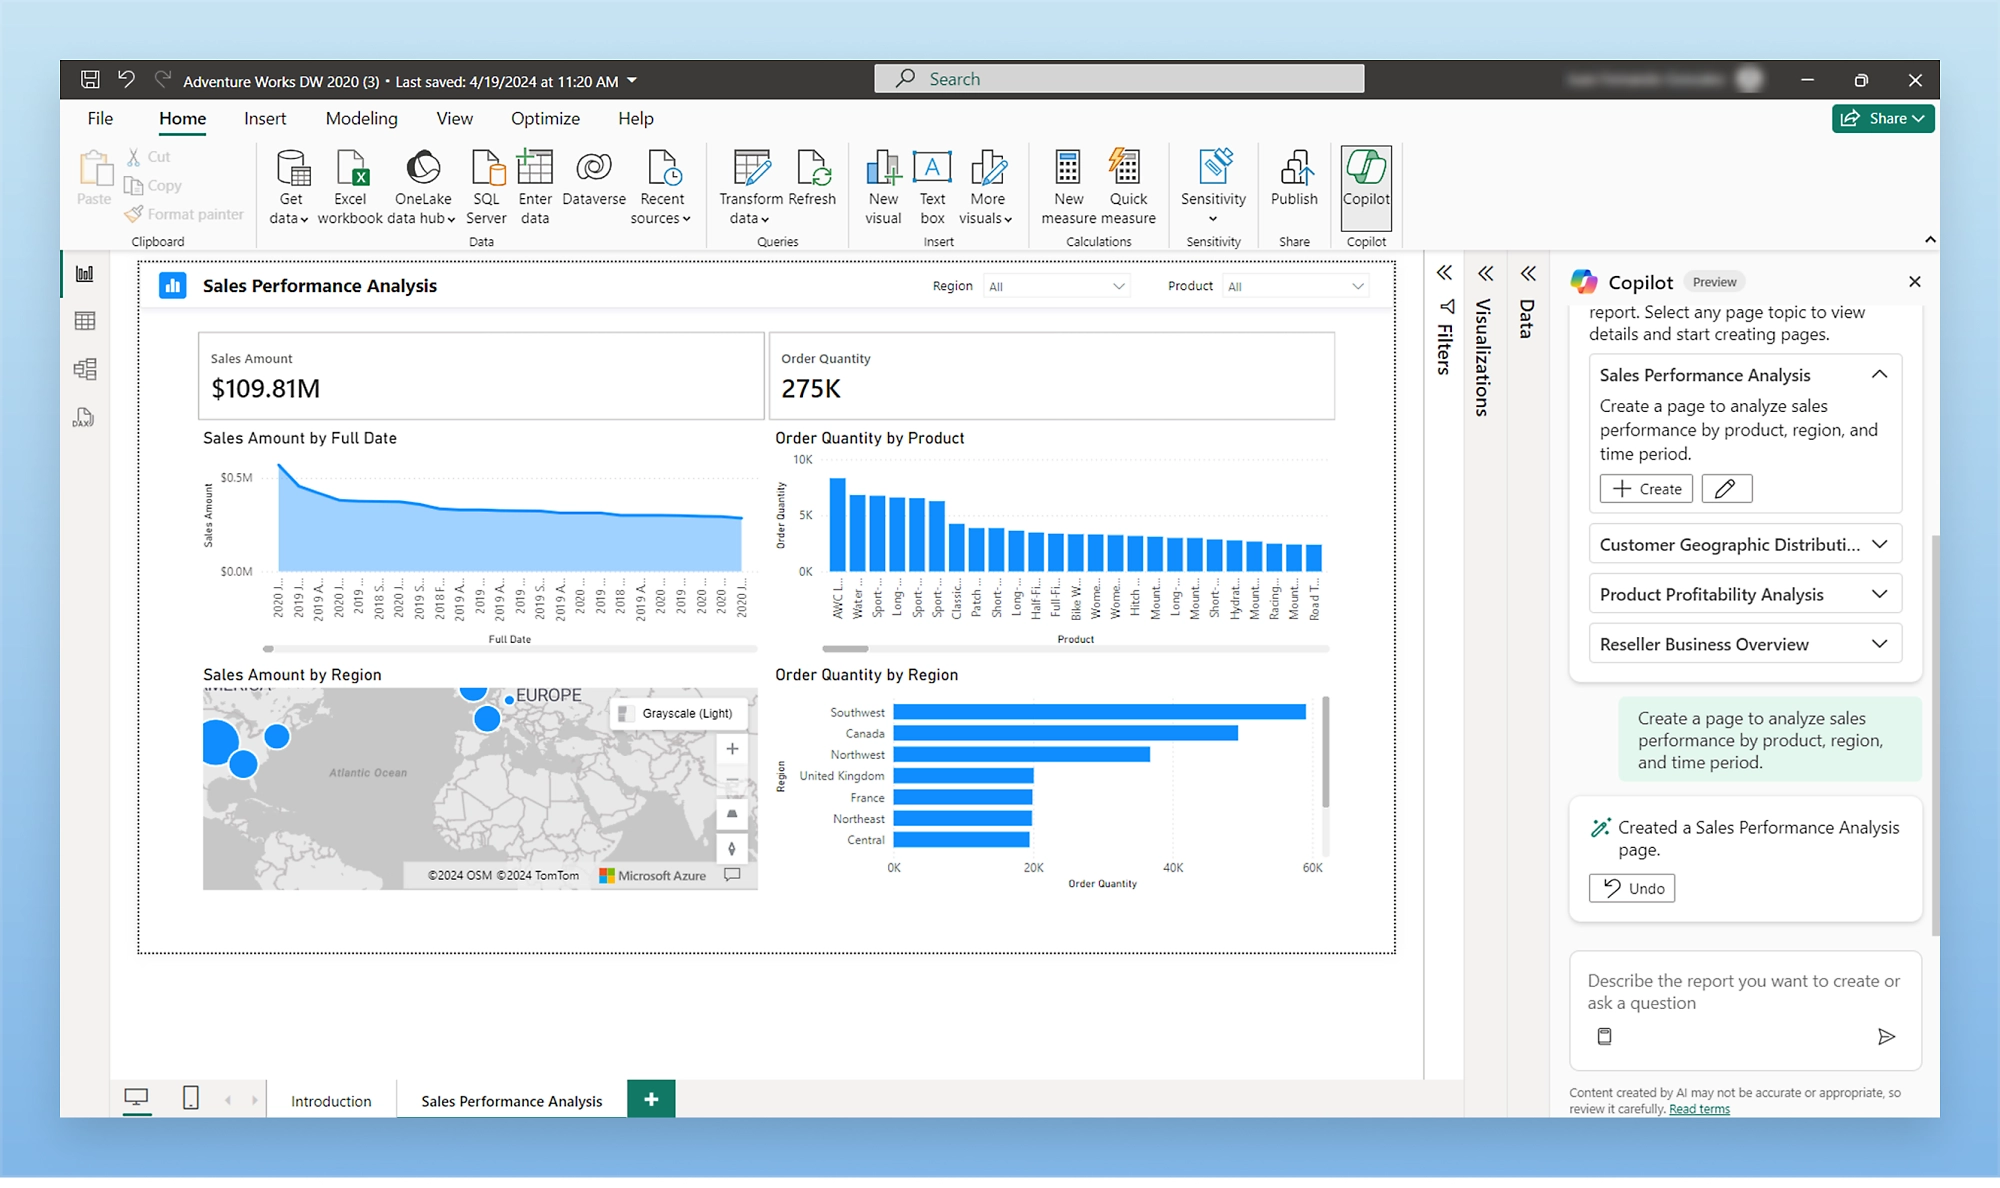 Captura de pantalla del panel en la que se muestran diferentes métricas y gráficos para el análisis del rendimiento de ventas en función de la cantidad de ventas y la cantidad de pedidos